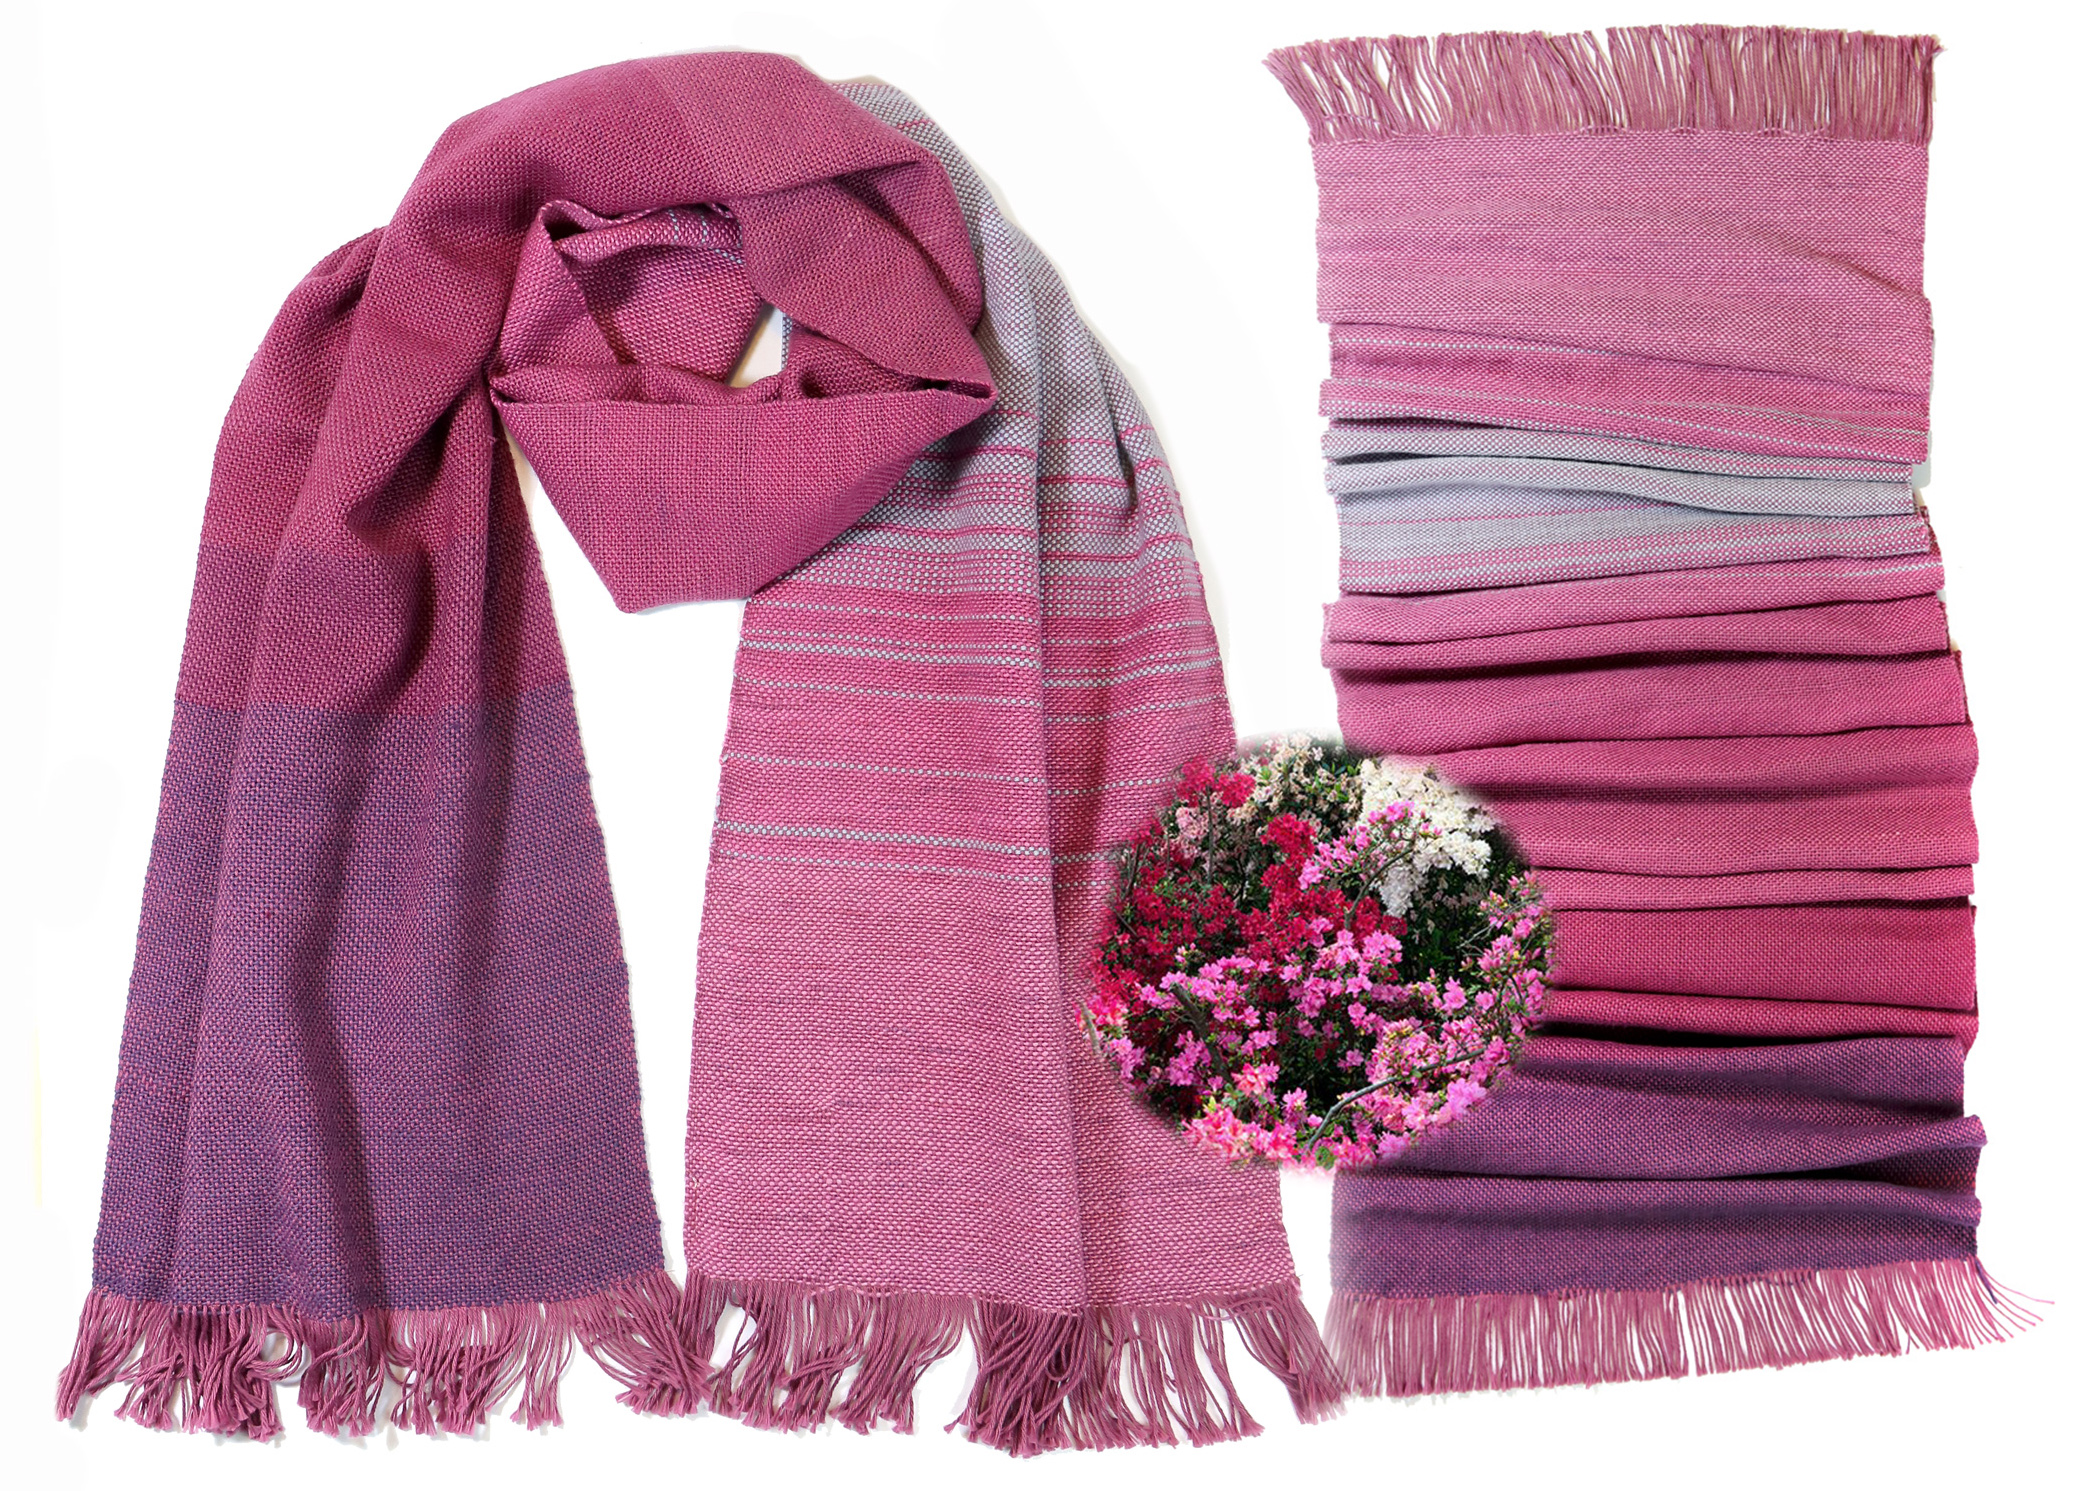 Neuer, handgewebter Schal in prächtigen Farben wie aus einem japanischen Azaleengarten